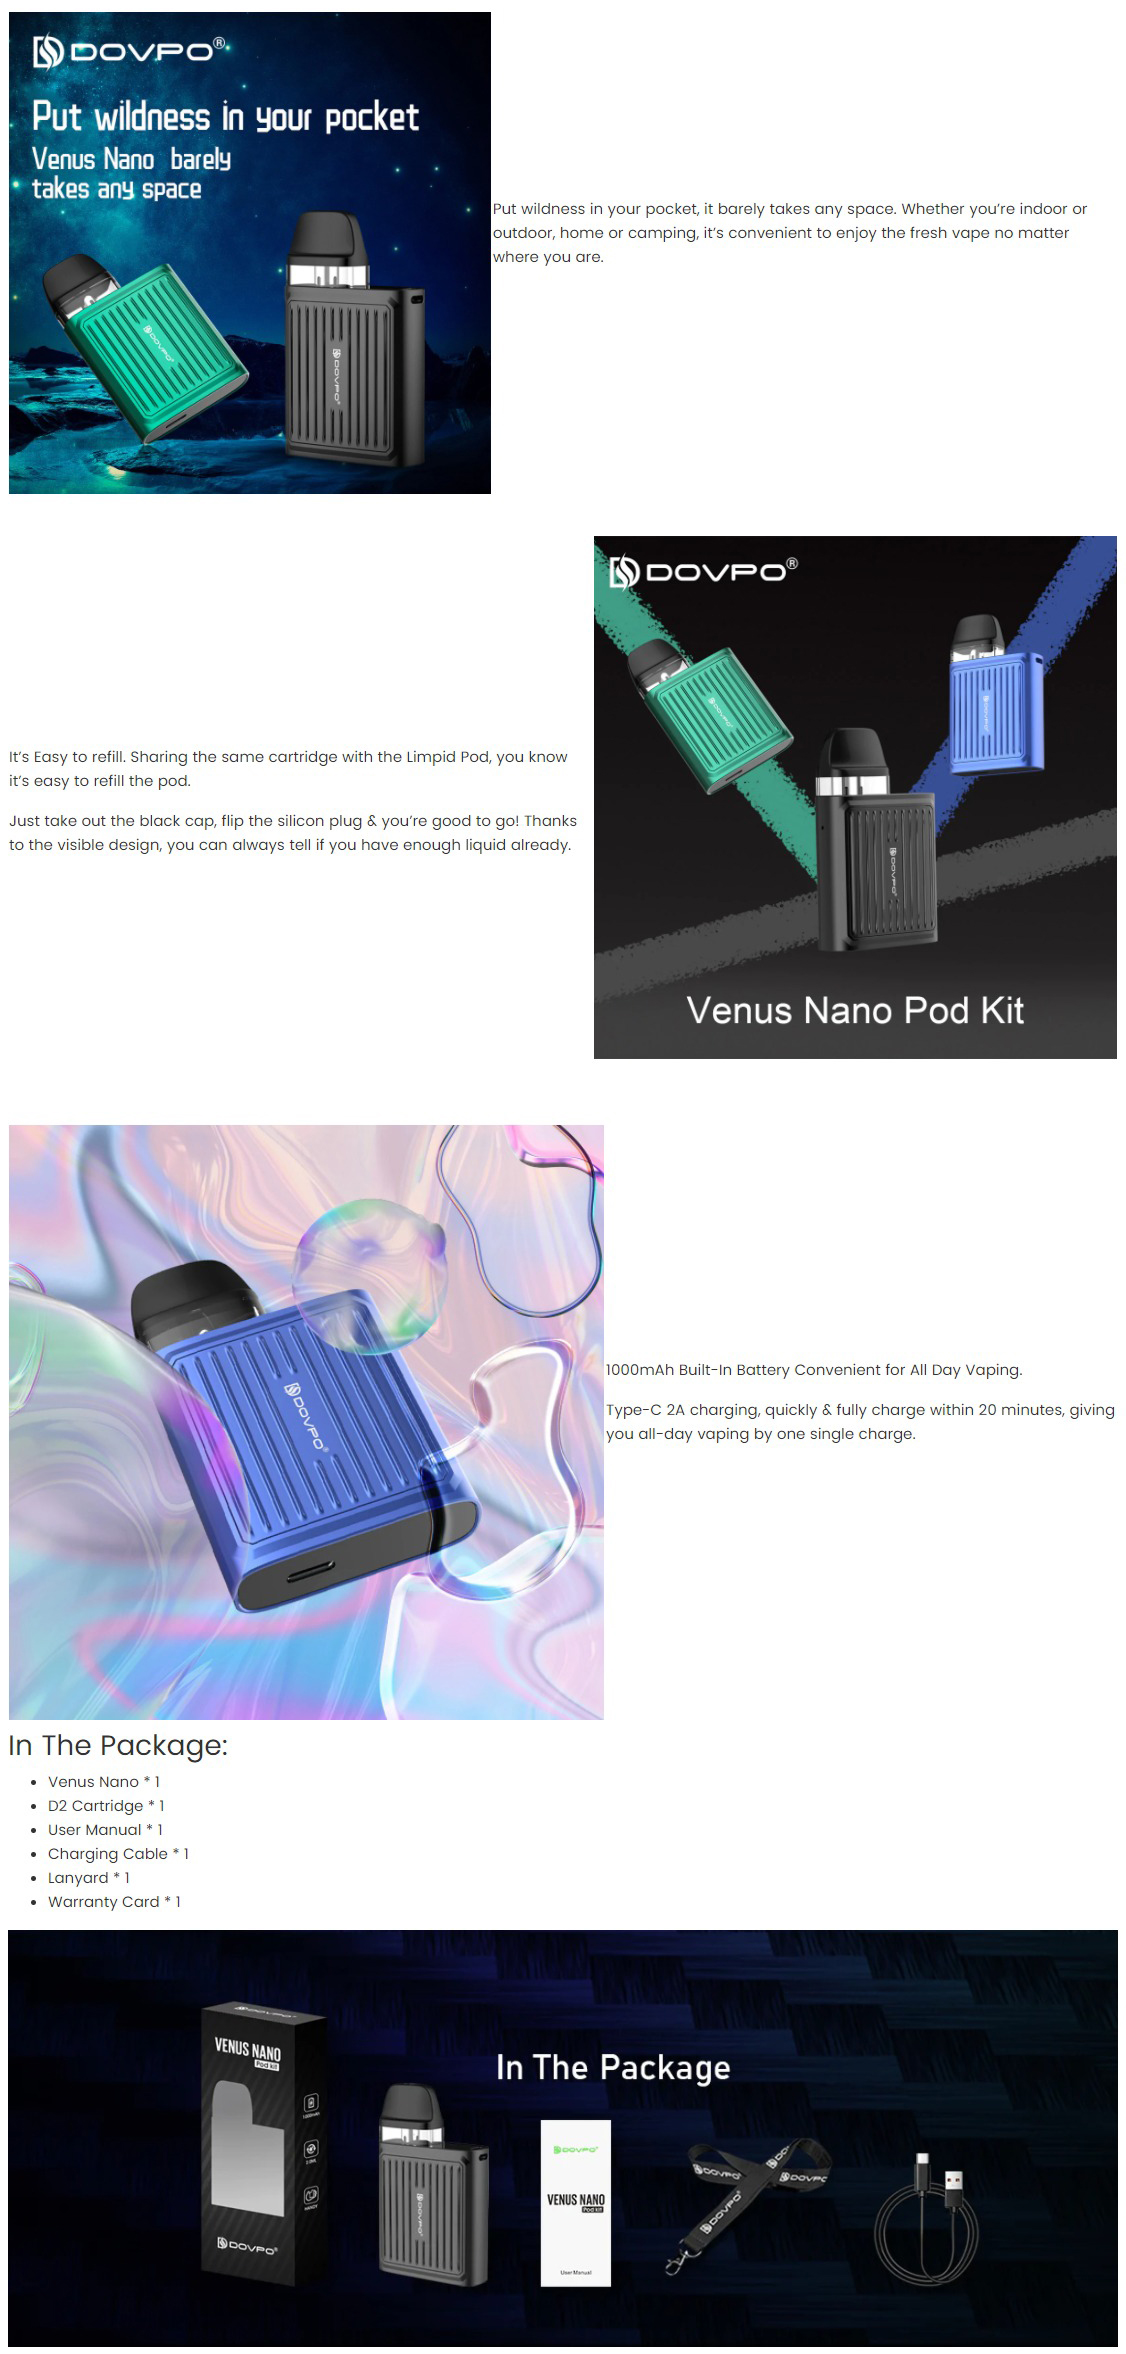 Venus Nano